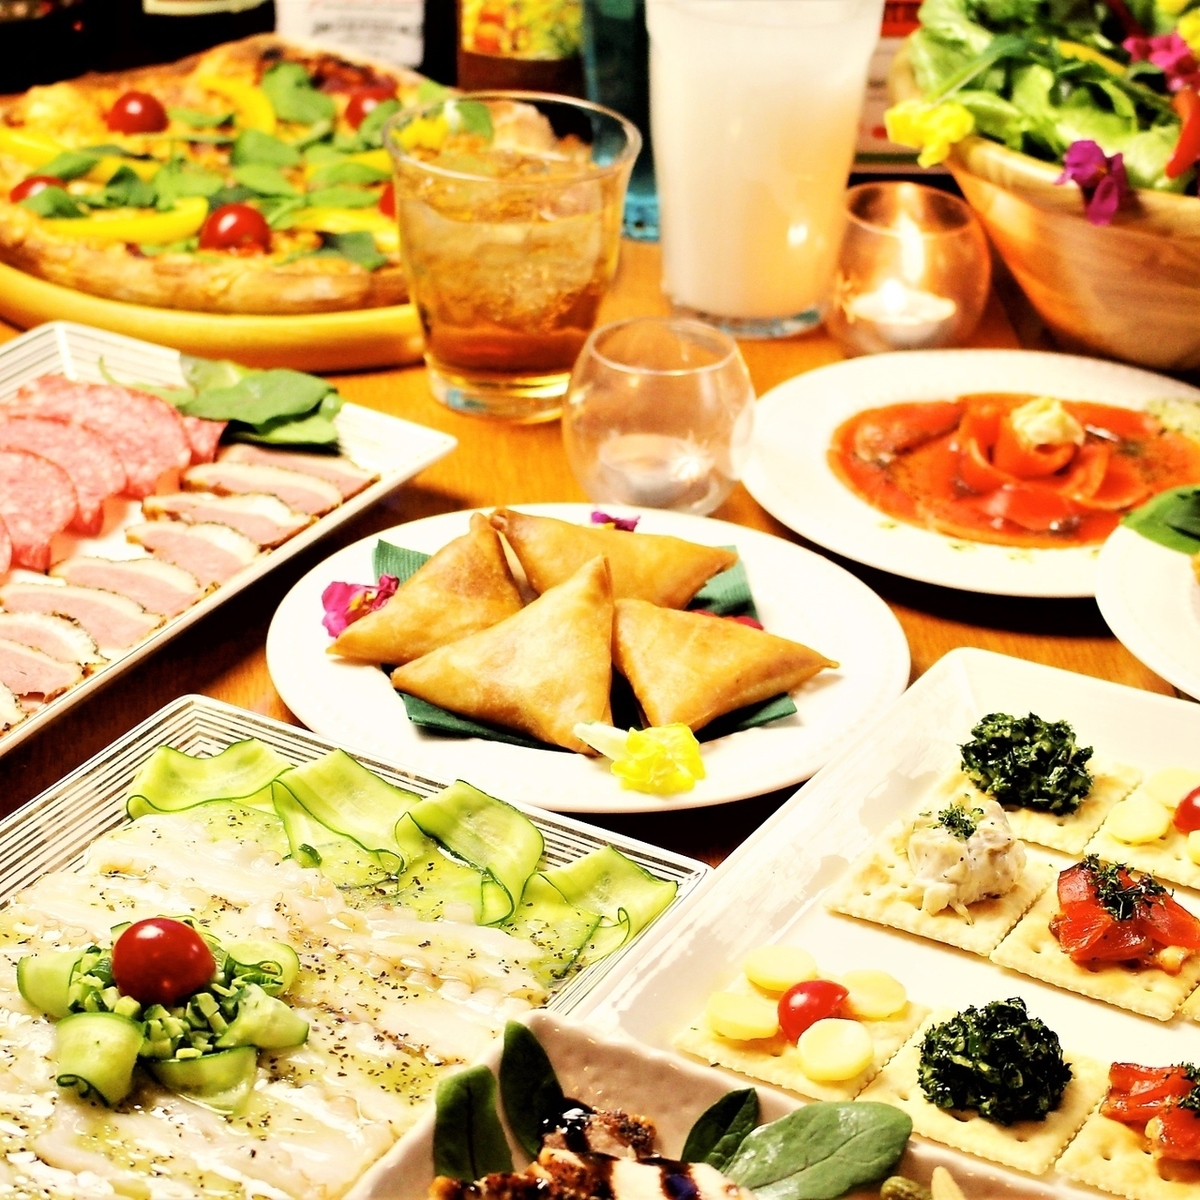 澀谷的私人促銷派對便宜又美味的套餐令人滿意